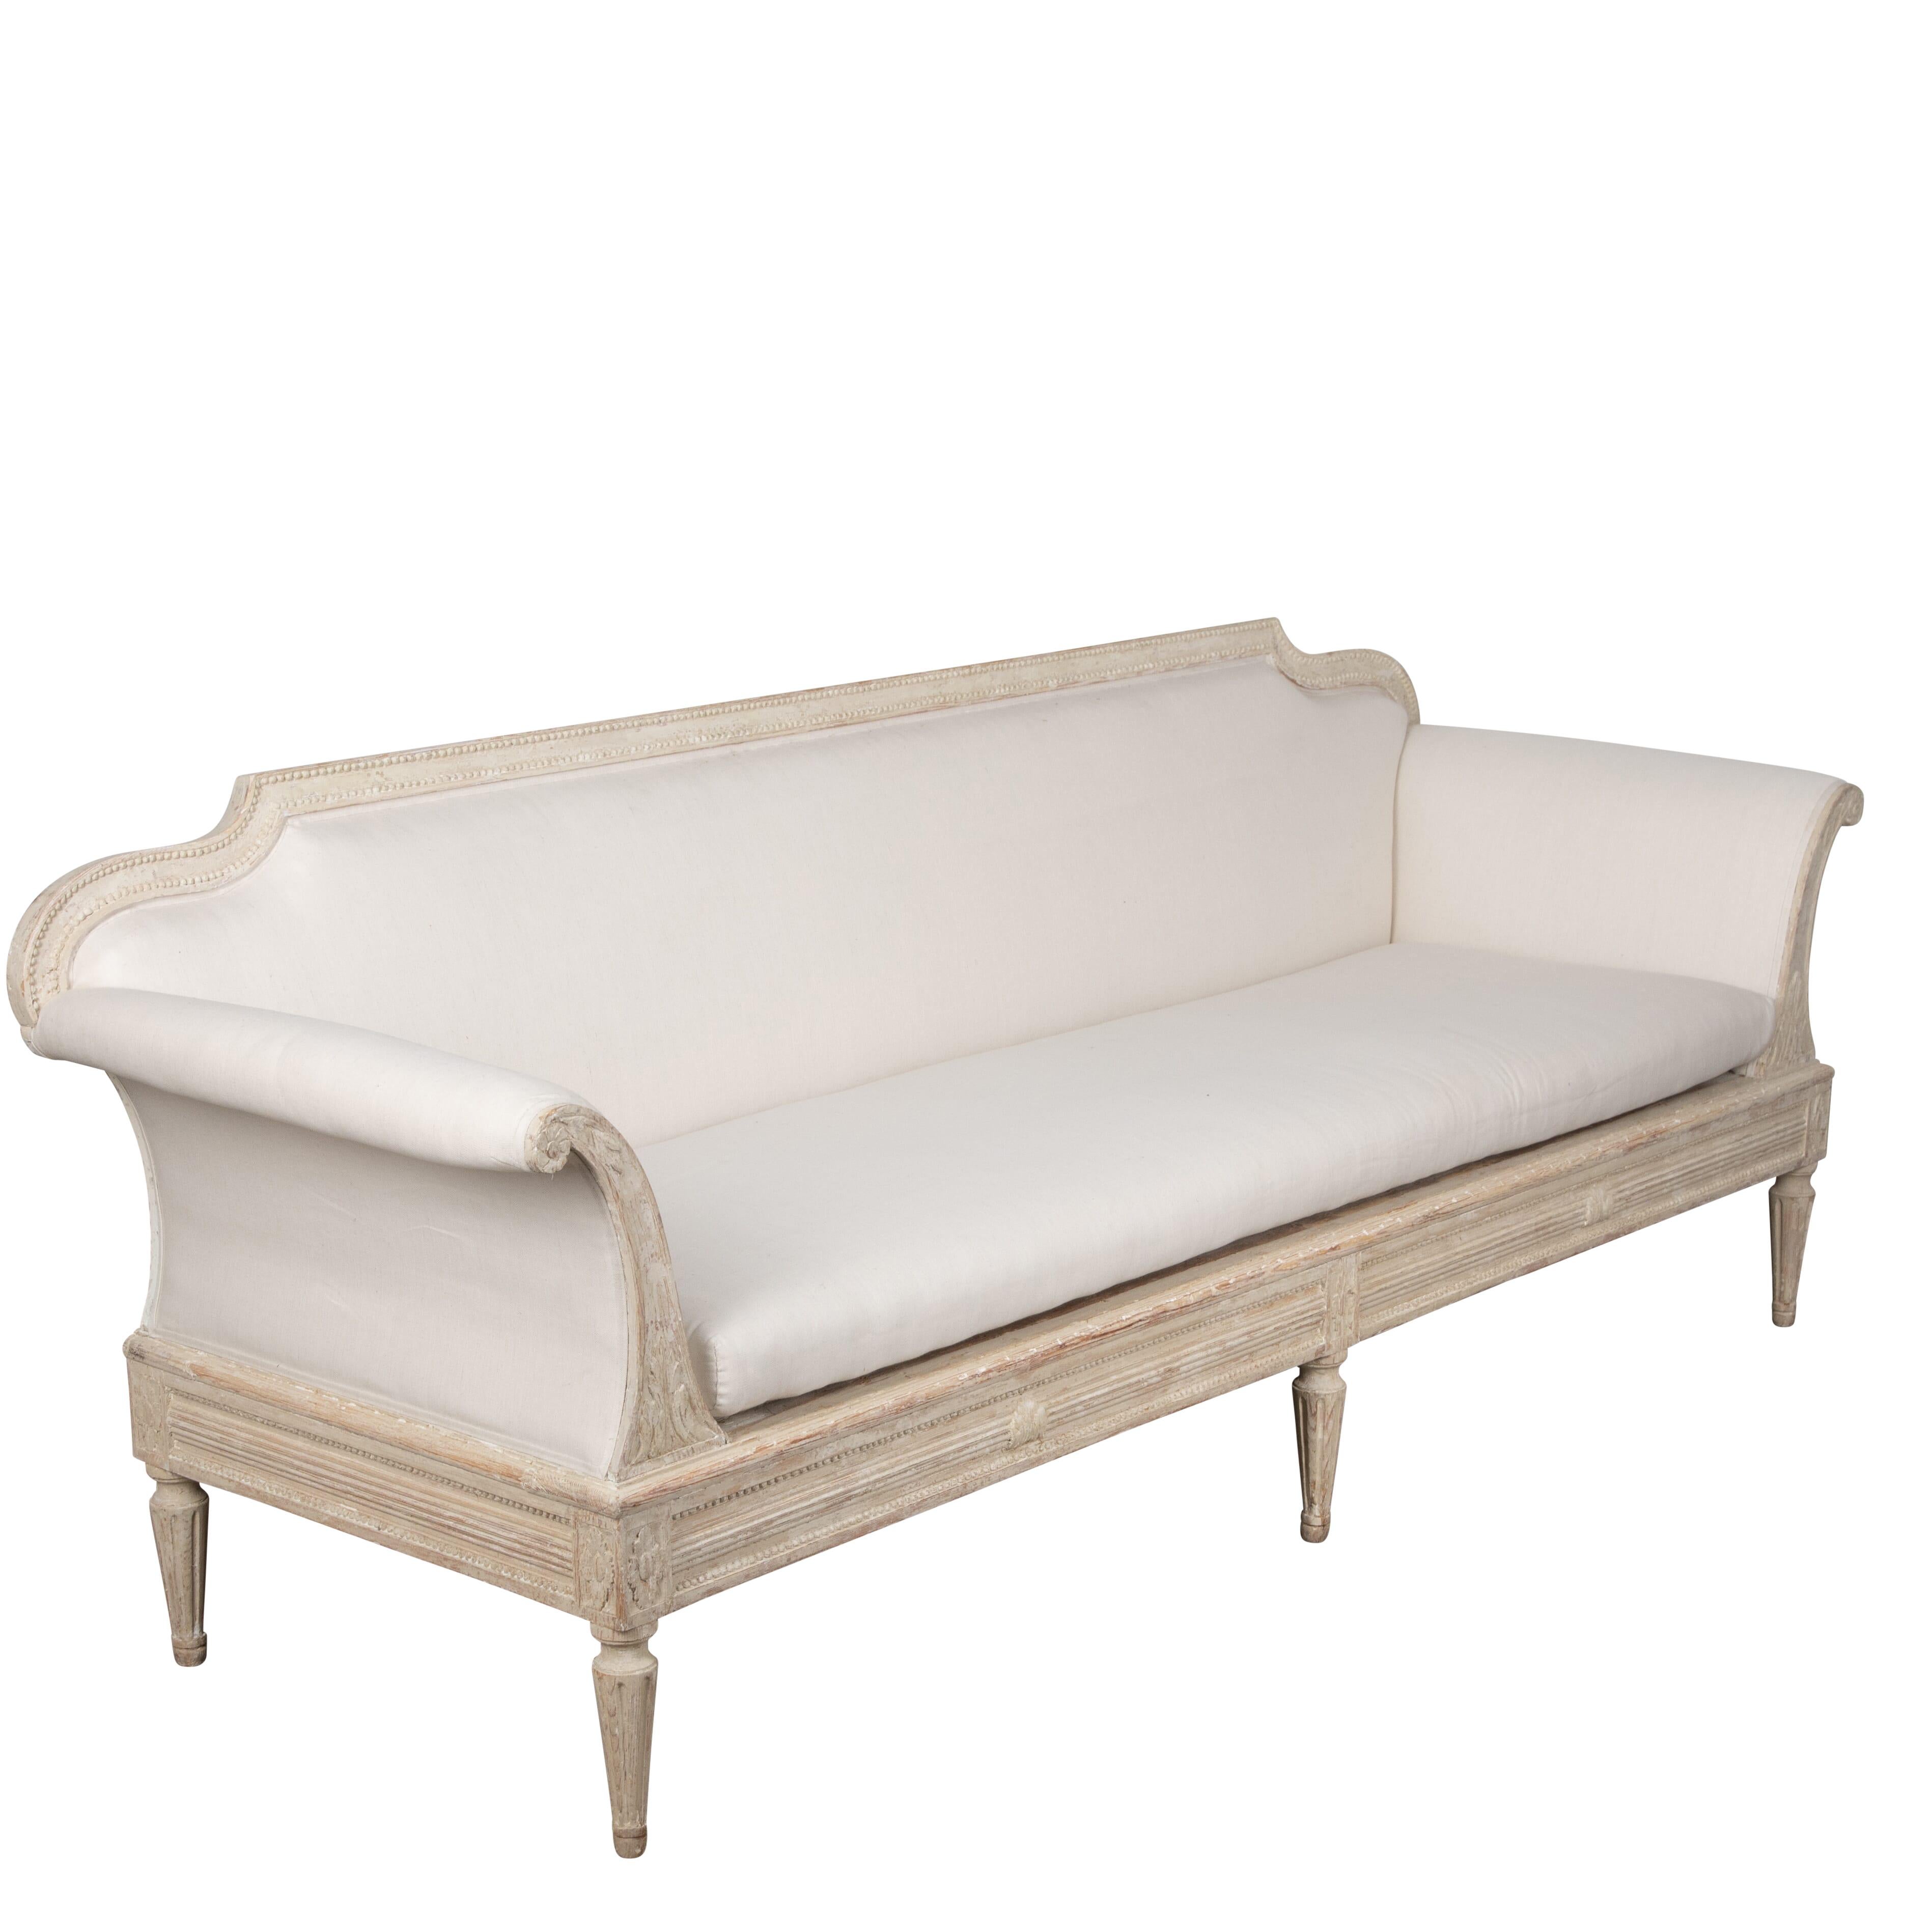 Gustavianisches Sofa aus dem 19. Jahrhundert im Landhausstil.
Mit geschnitzten Verzierungen an den Armen, Beinen und der Schürze.
Dieses Sofa hat eine abnehmbare Rückenlehne, so dass es auch als Schlafsofa verwendet werden kann.